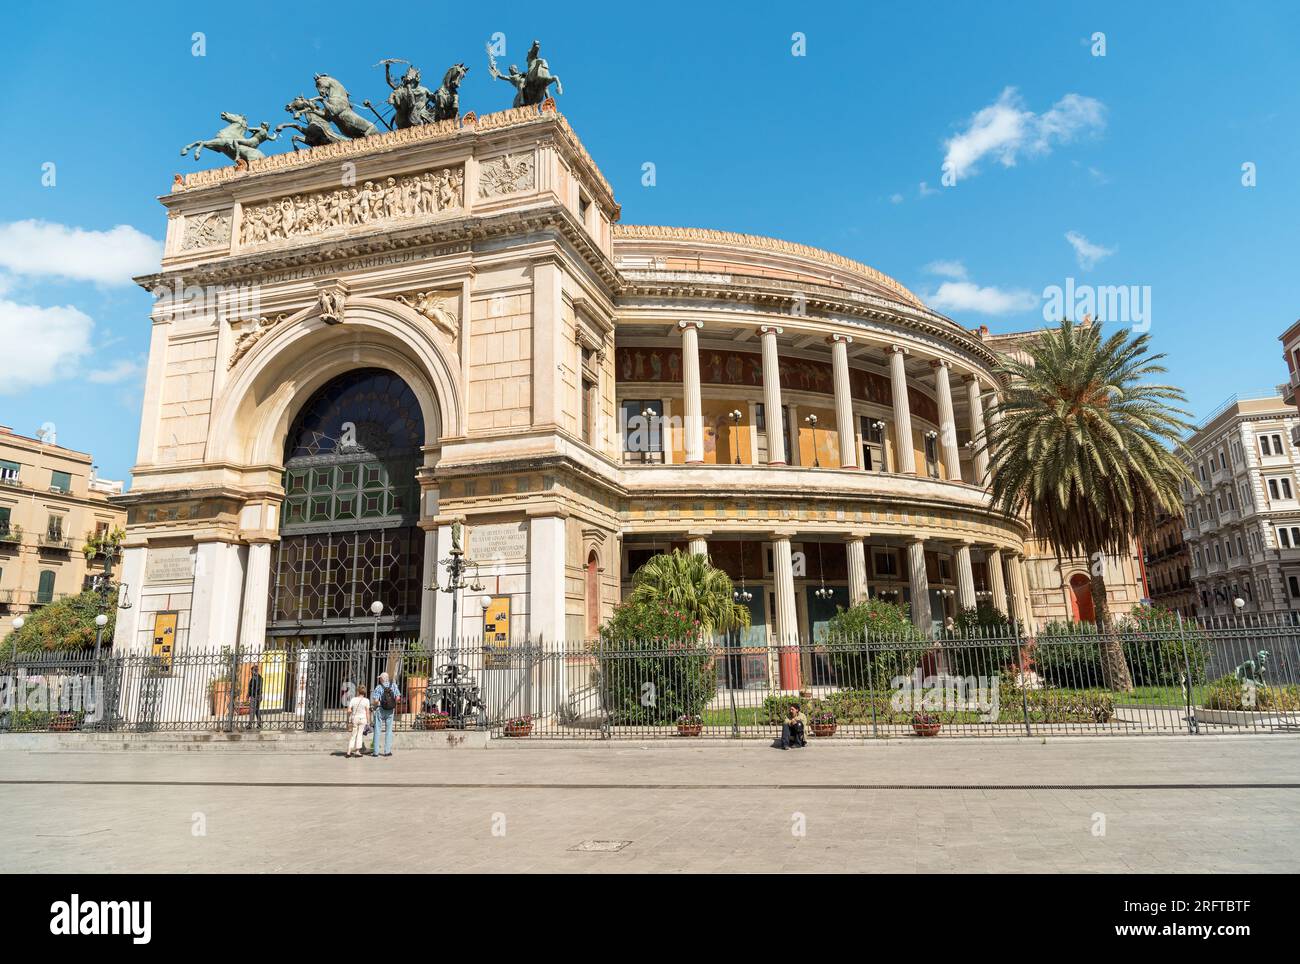 Palerme, Sicile, Italie - 7 octobre 2017 : vue du théâtre Politeama Garibaldi, situé sur la Piazza Ruggero Settimo à Palerme, Sicile, Italie Banque D'Images